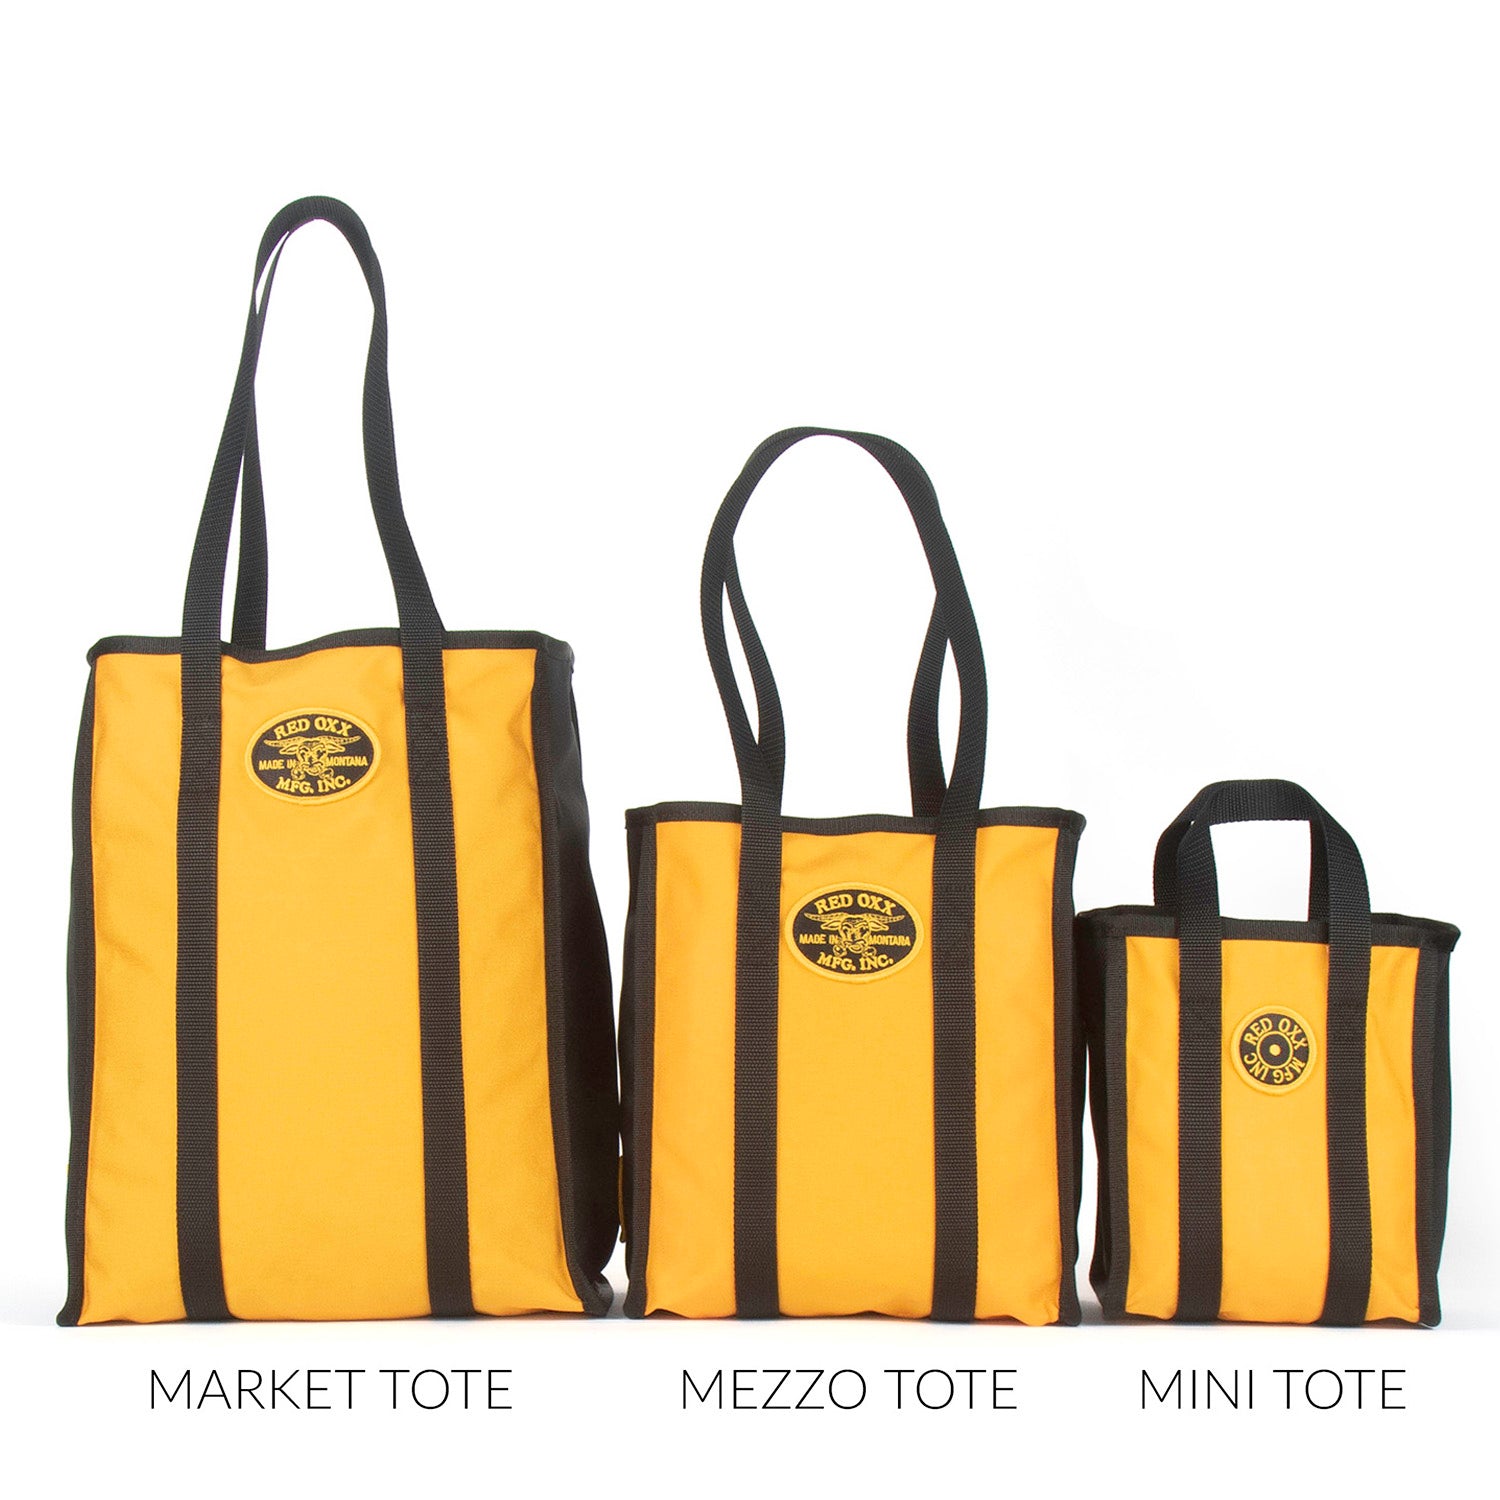 Tote Bag Comparison Front View from left to right.  Market Tote, Mezzo Tote, Mini Tote